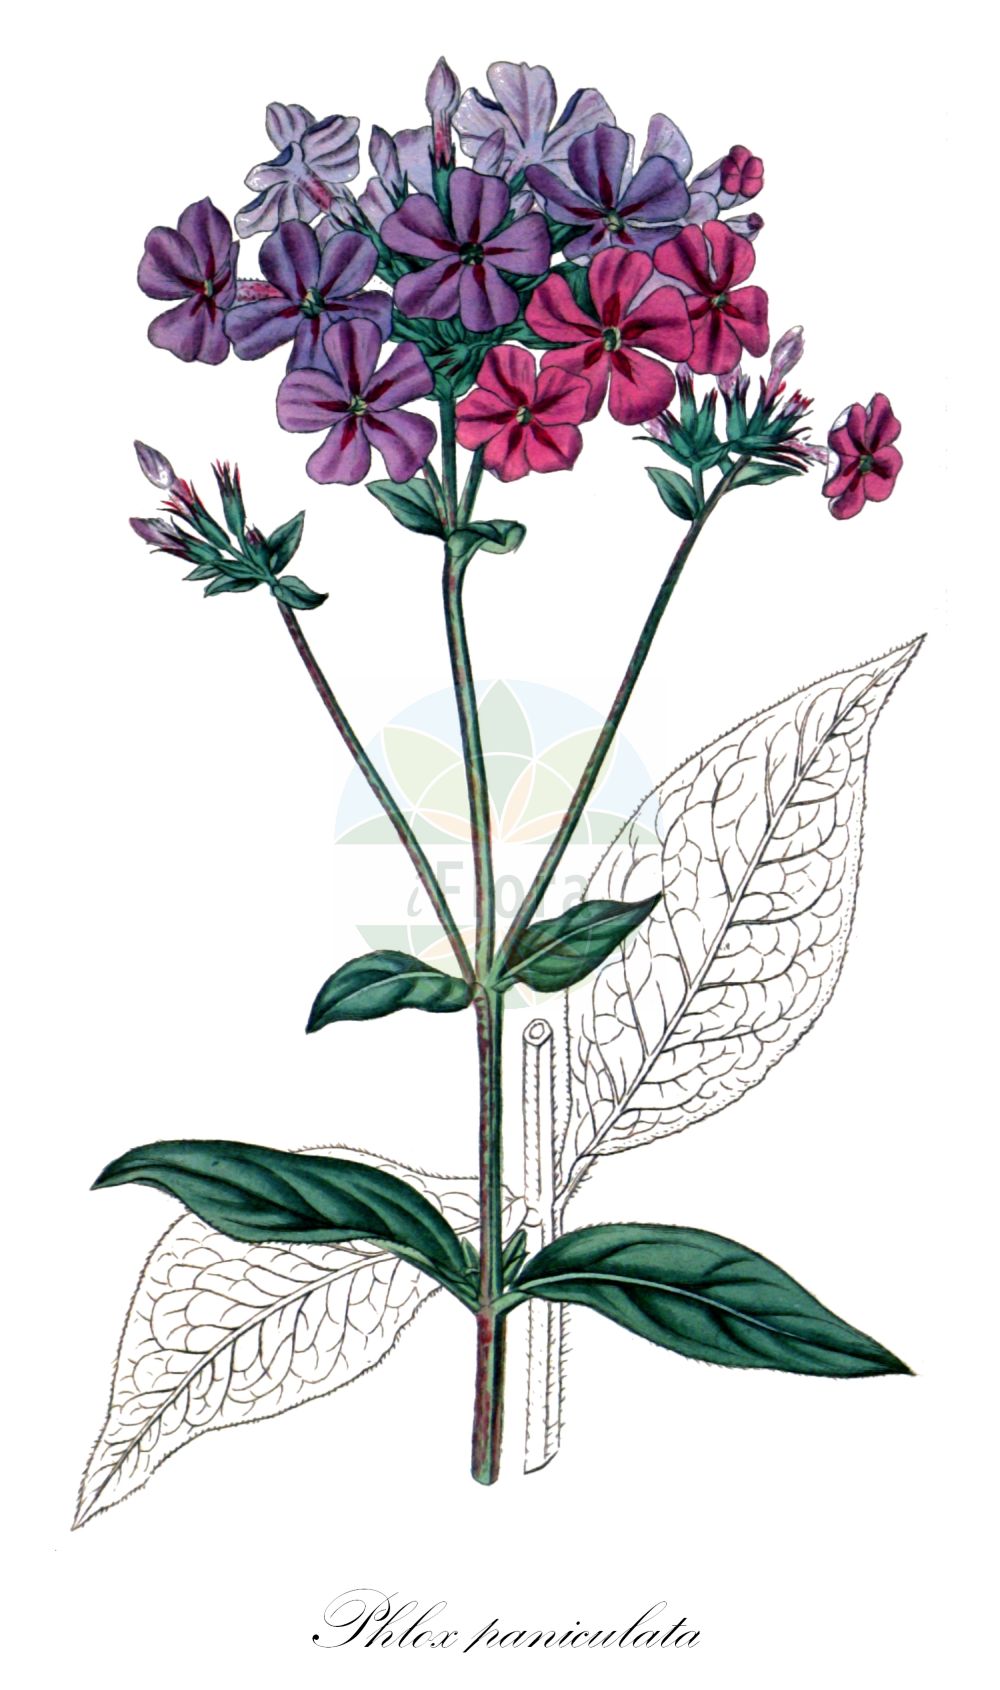 Historische Abbildung von Phlox paniculata (Stauden-Phlox - Phlox). Das Bild zeigt Blatt, Bluete, Frucht und Same. ---- Historical Drawing of Phlox paniculata (Stauden-Phlox - Phlox). The image is showing leaf, flower, fruit and seed.(Phlox paniculata,Stauden-Phlox,Phlox,Phlox paniculata,Stauden-Phlox,Phlox,Garden Phlox,Fall Phlox,Summer Perennial Phlox,Phlox,Flammenblume,Polemoniaceae,Himmelsleitergewächse,Phlox family,Blatt,Bluete,Frucht,Same,leaf,flower,fruit,seed,Curtis Botanical Magazine (1817))